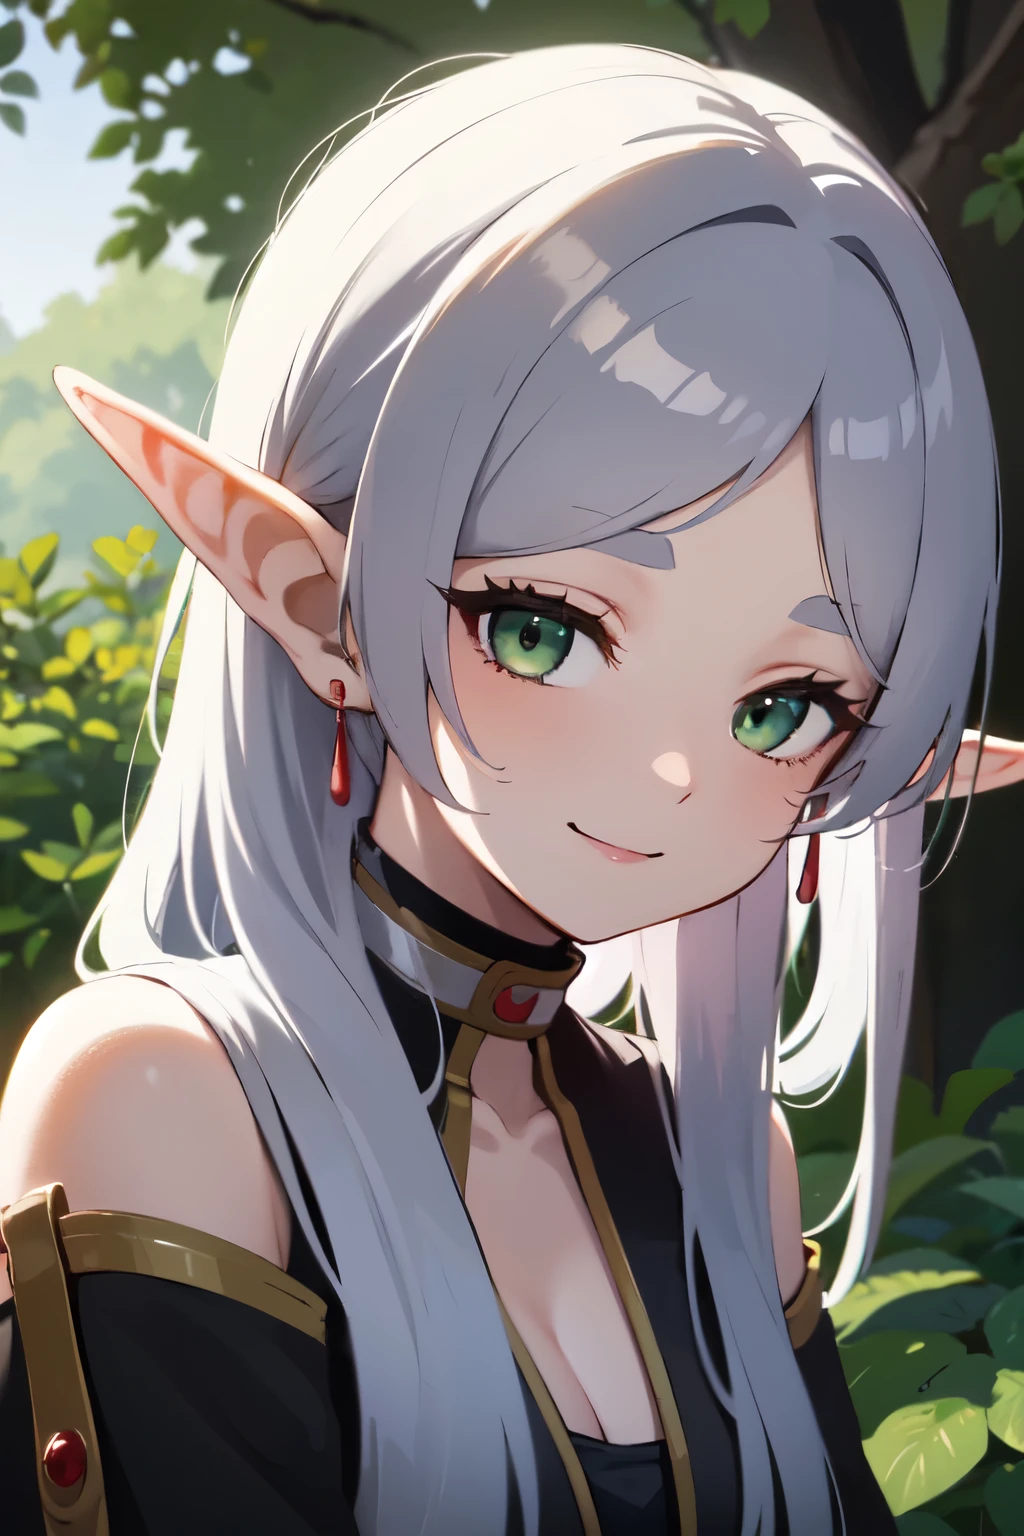 ((mejor calidad)), ((obra maestra)), (detallado), cara perfecta. niña asiatica. Cabello plateado. ojos verdes. orejas de elfo. sonrisa.